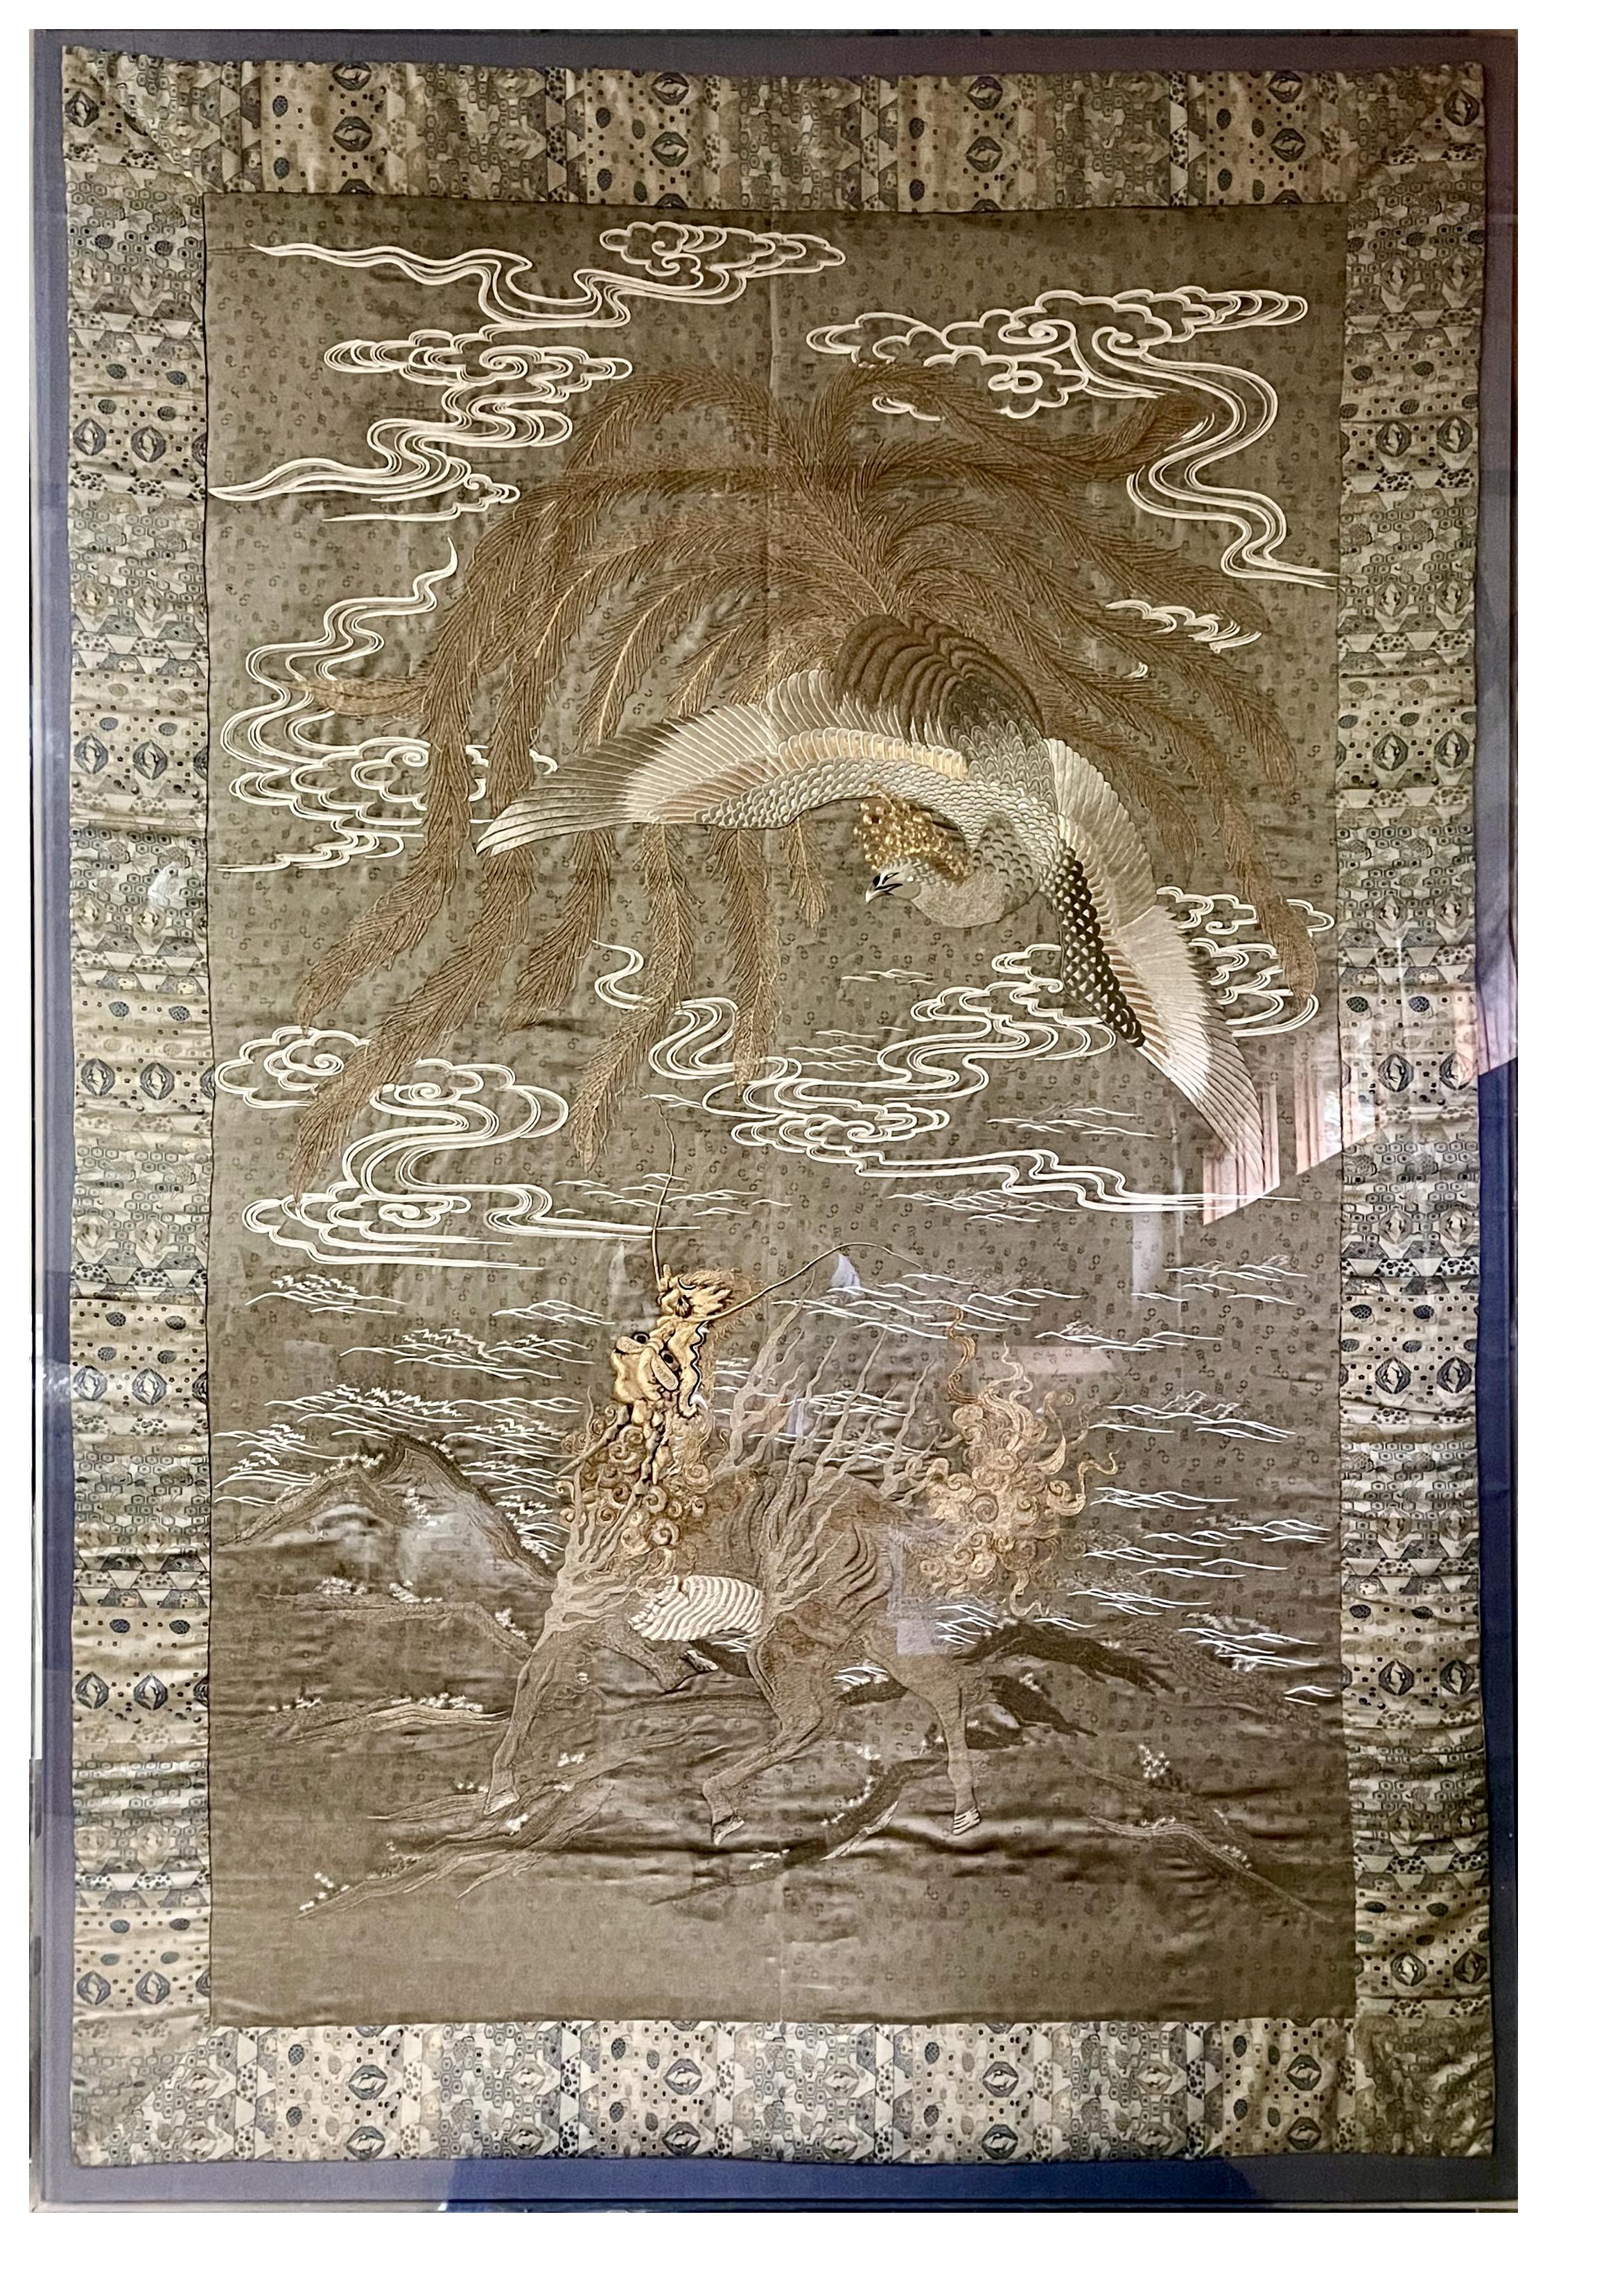 Une gigantesque tapisserie japonaise brodée, présentée de manière professionnelle dans une boîte d'ombrage en acrylique personnalisée. Cette œuvre d'art textile est datée des années 1890-1920, de la fin de l'ère Meiji (1868-1912) ou peut-être de